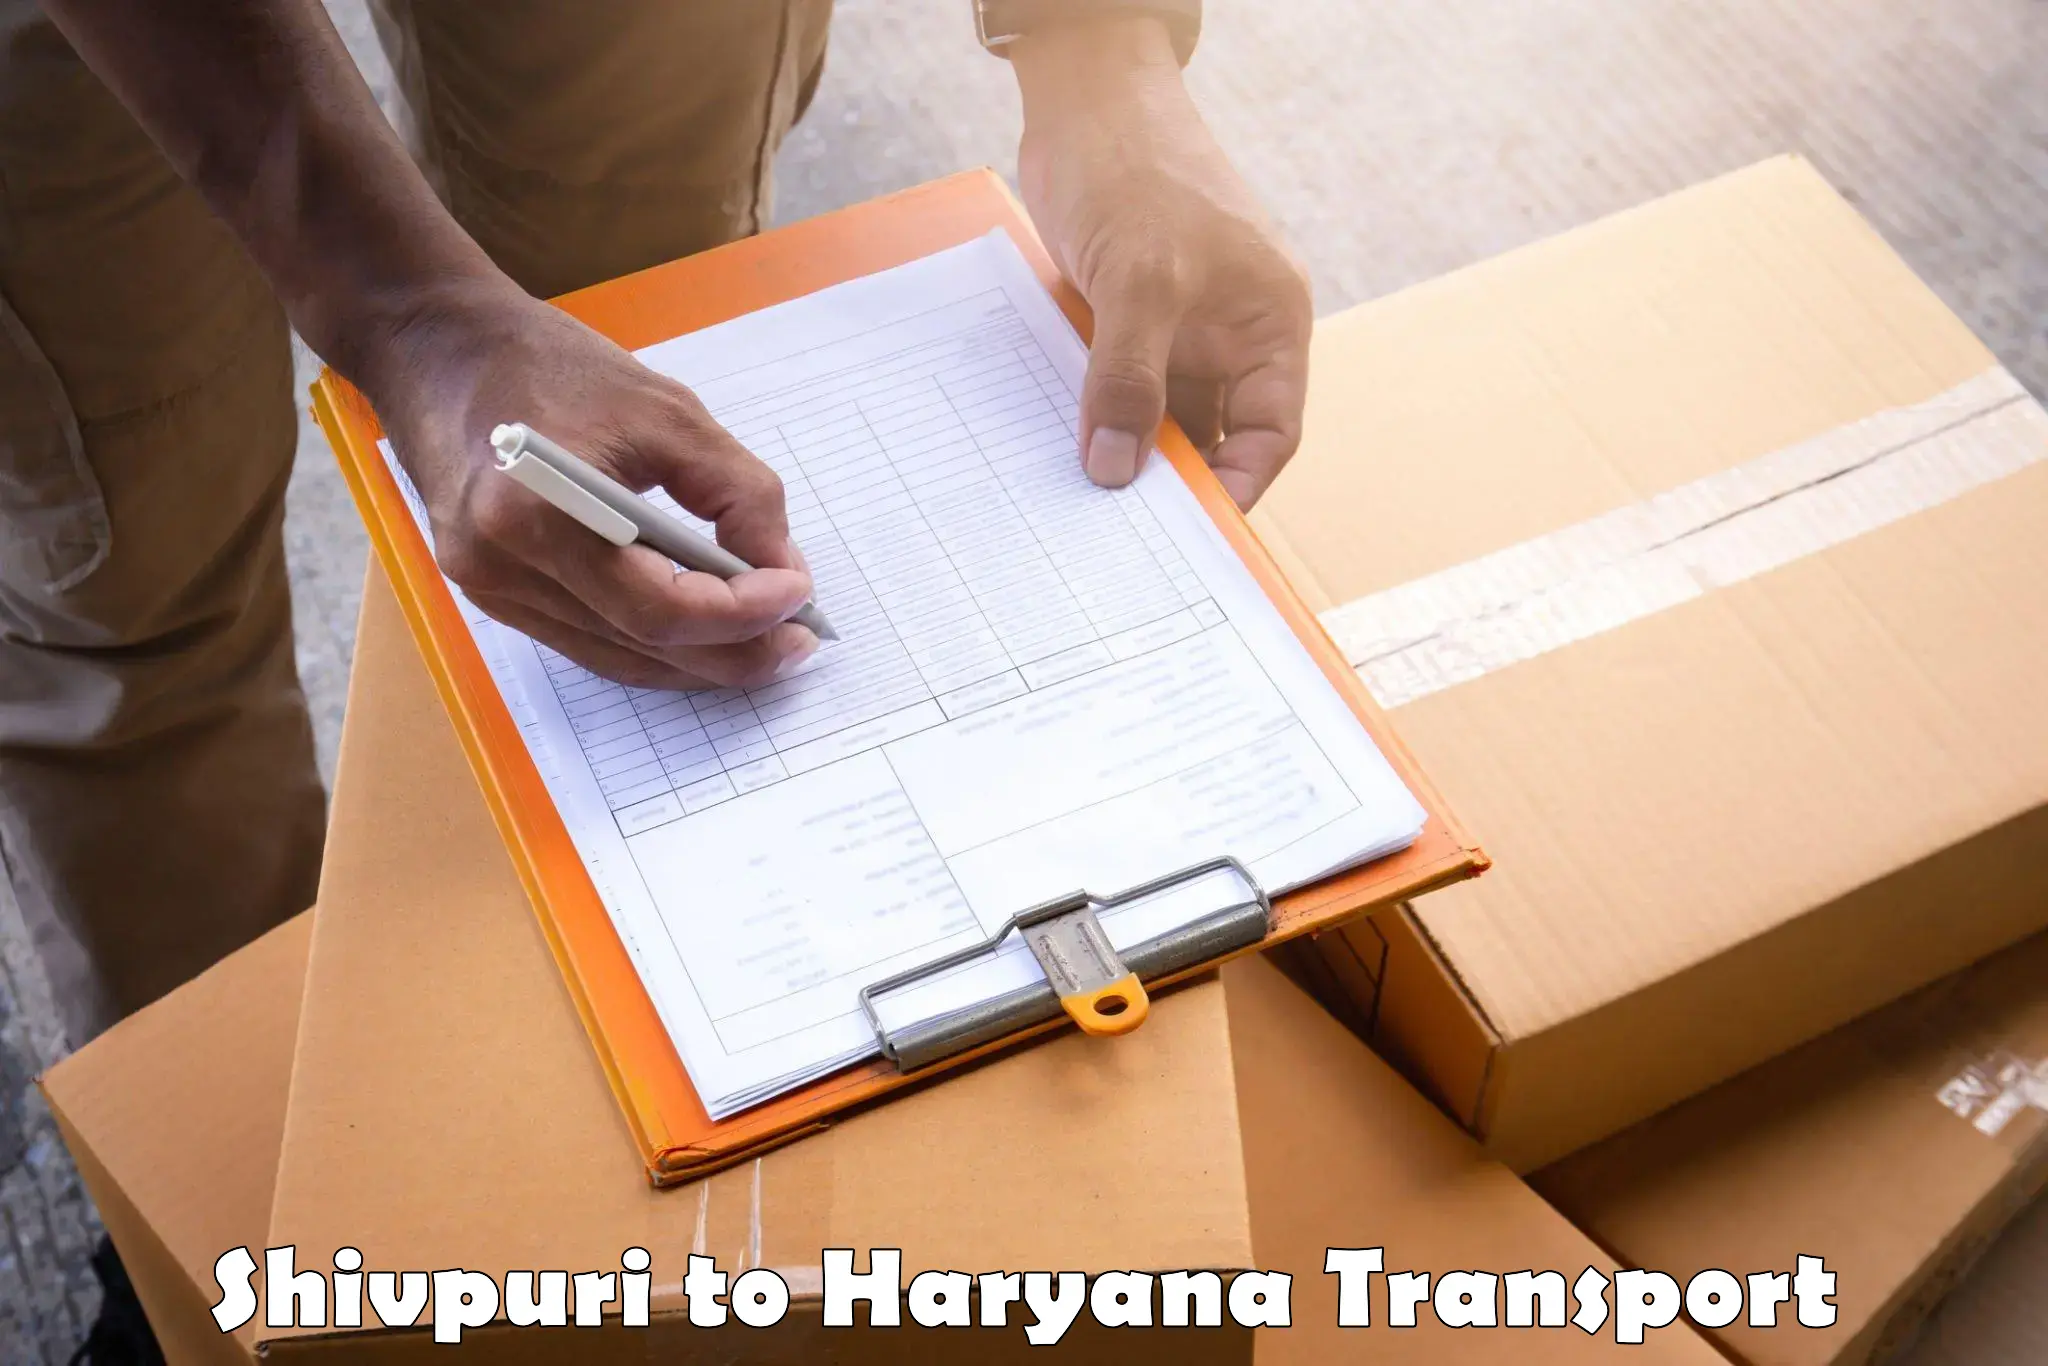 Transport in sharing Shivpuri to Haryana